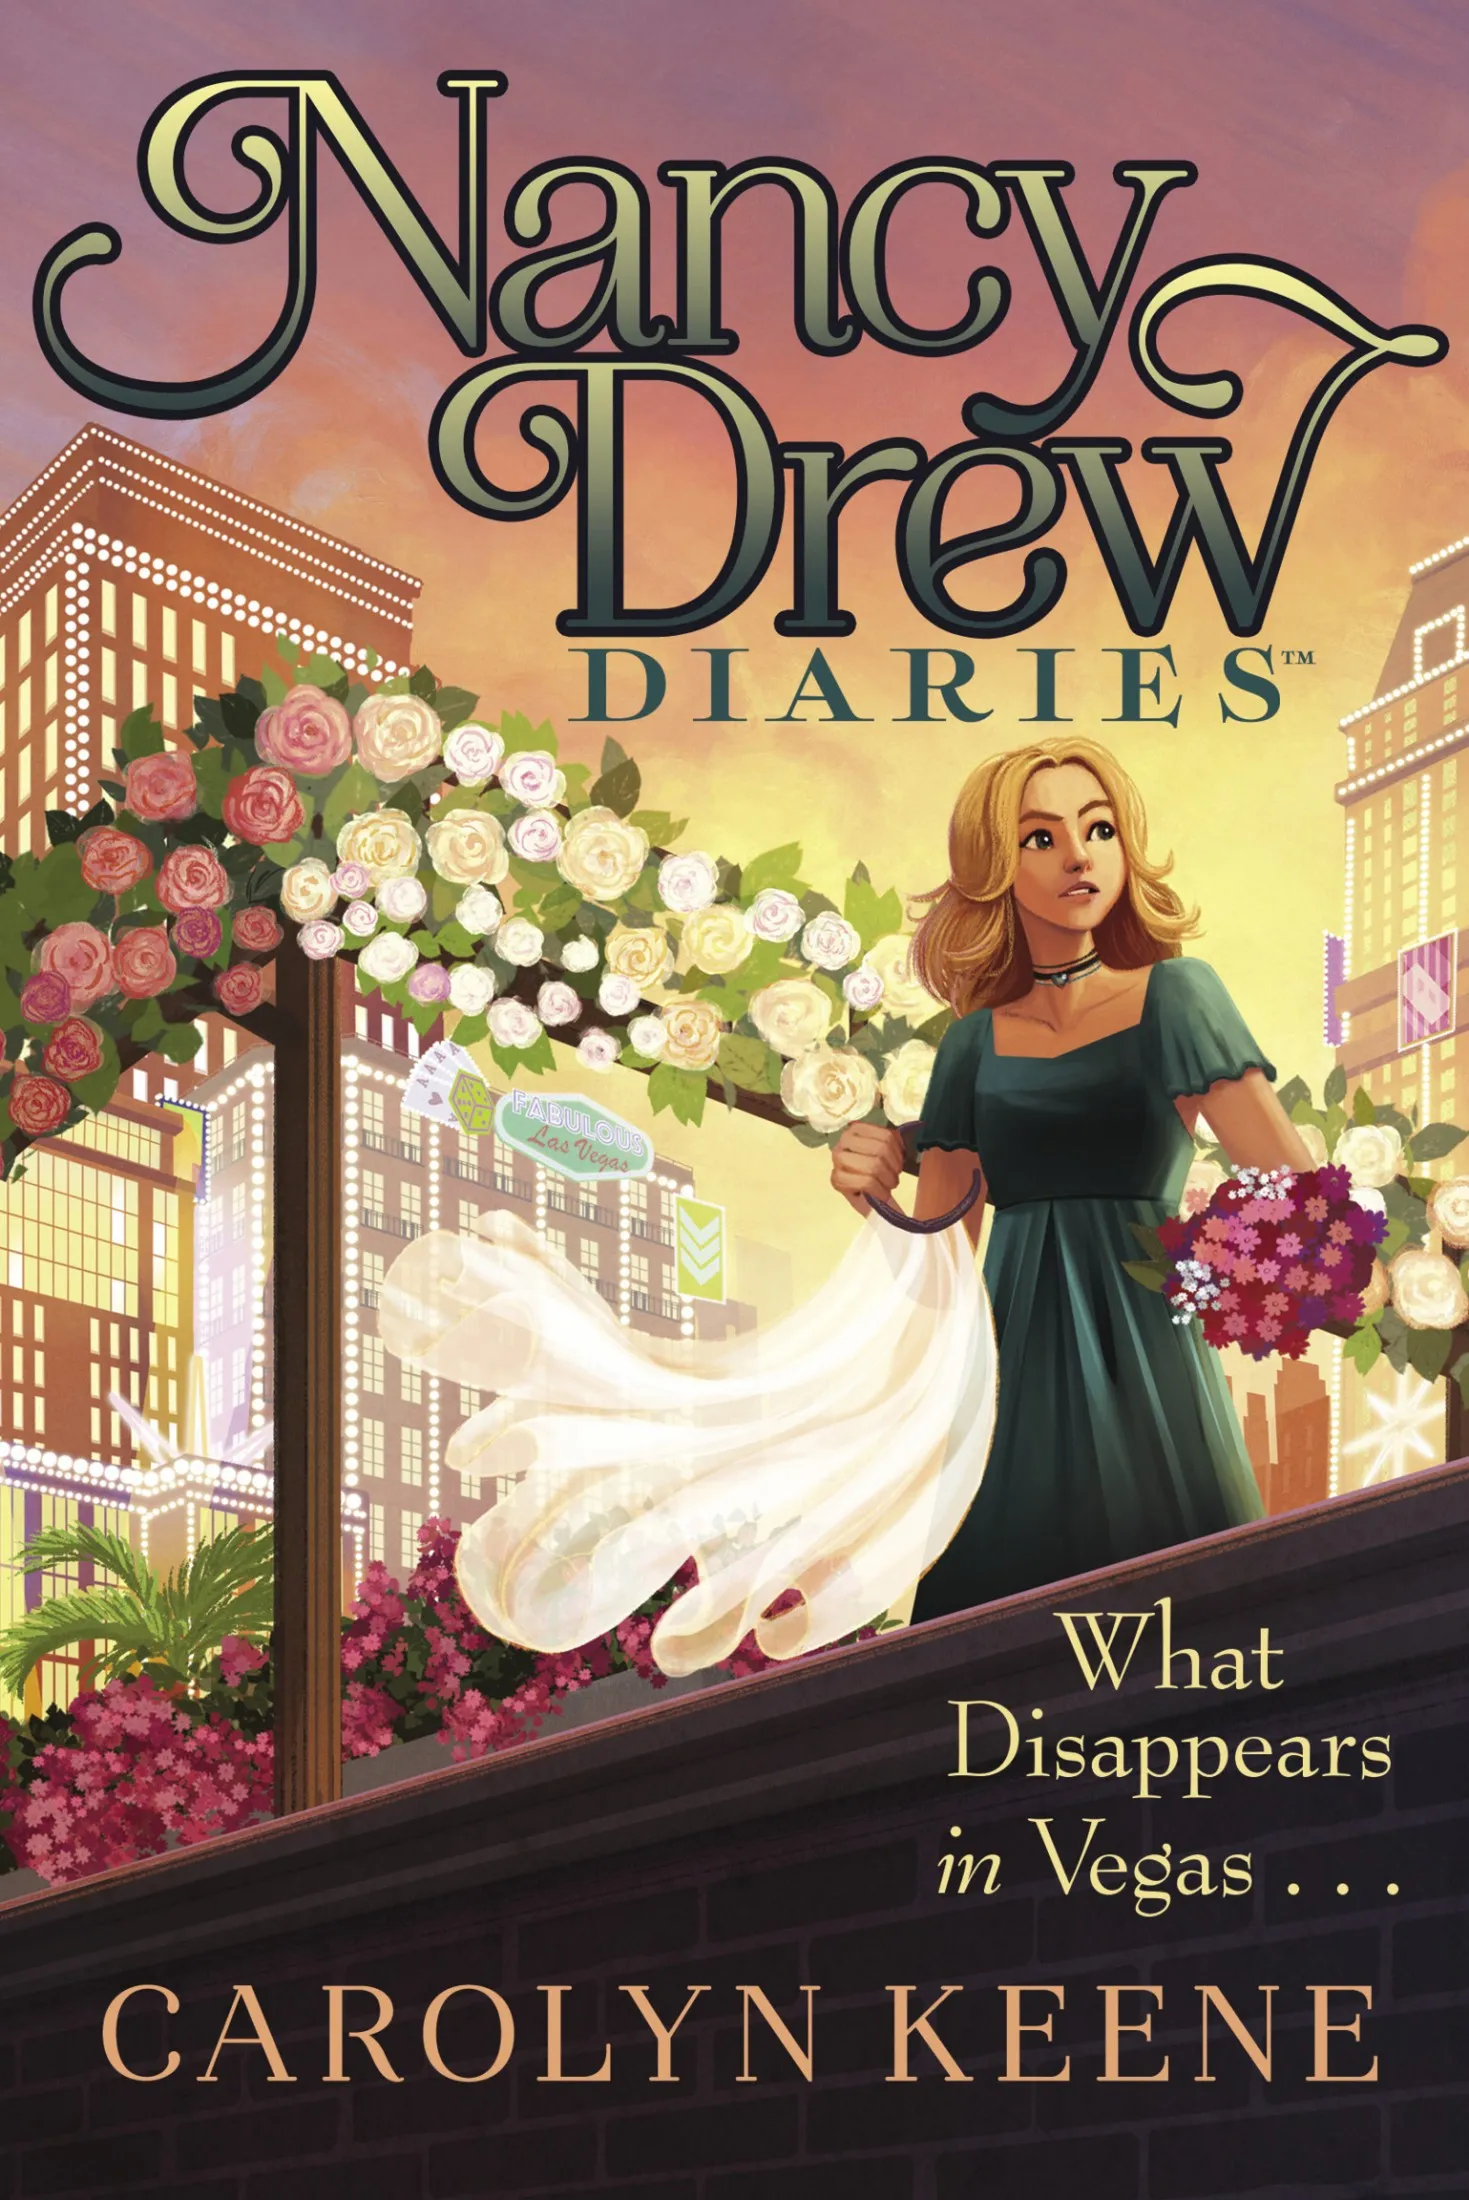 What Disappears in Vegas . . . (Nancy Drew Diaries #25)